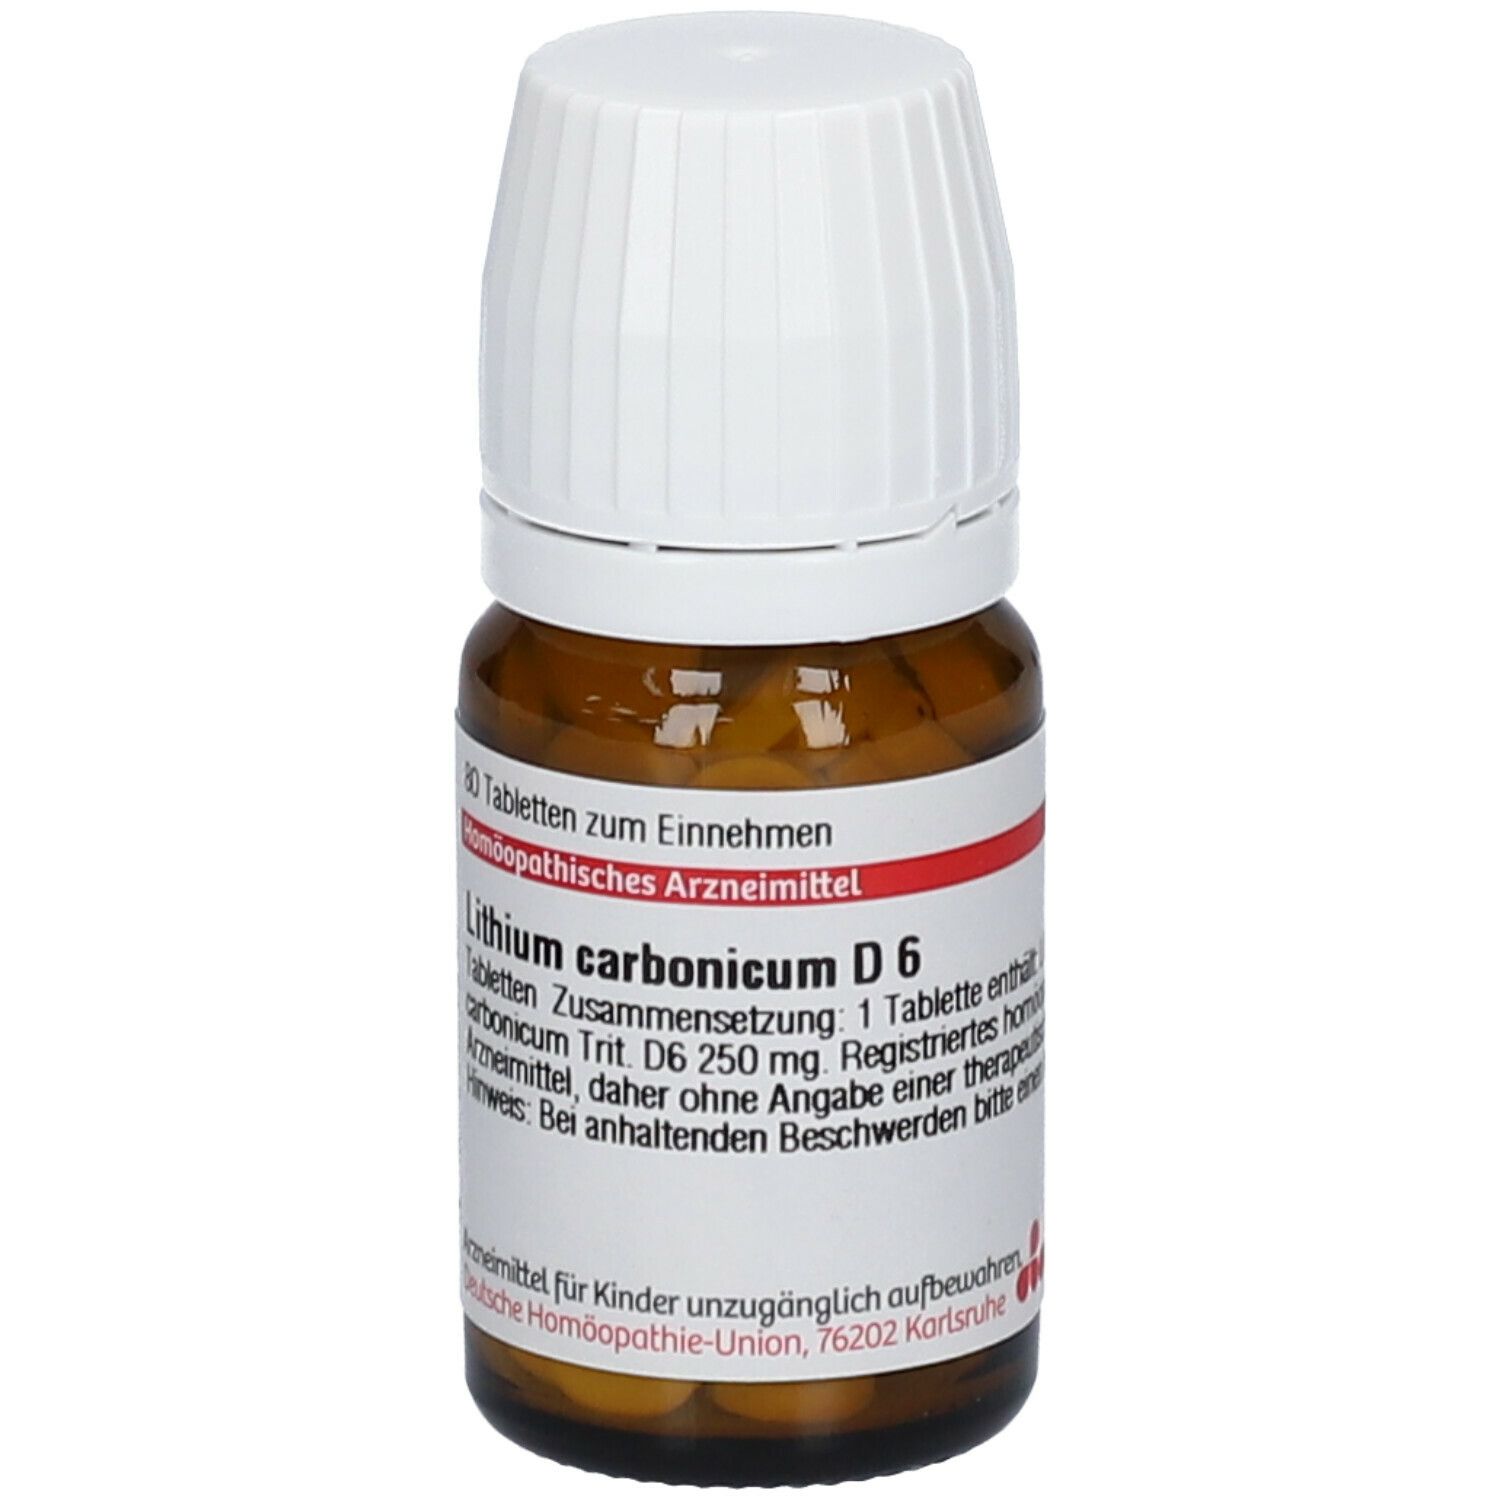 DHU Lithium Carbonicum D6